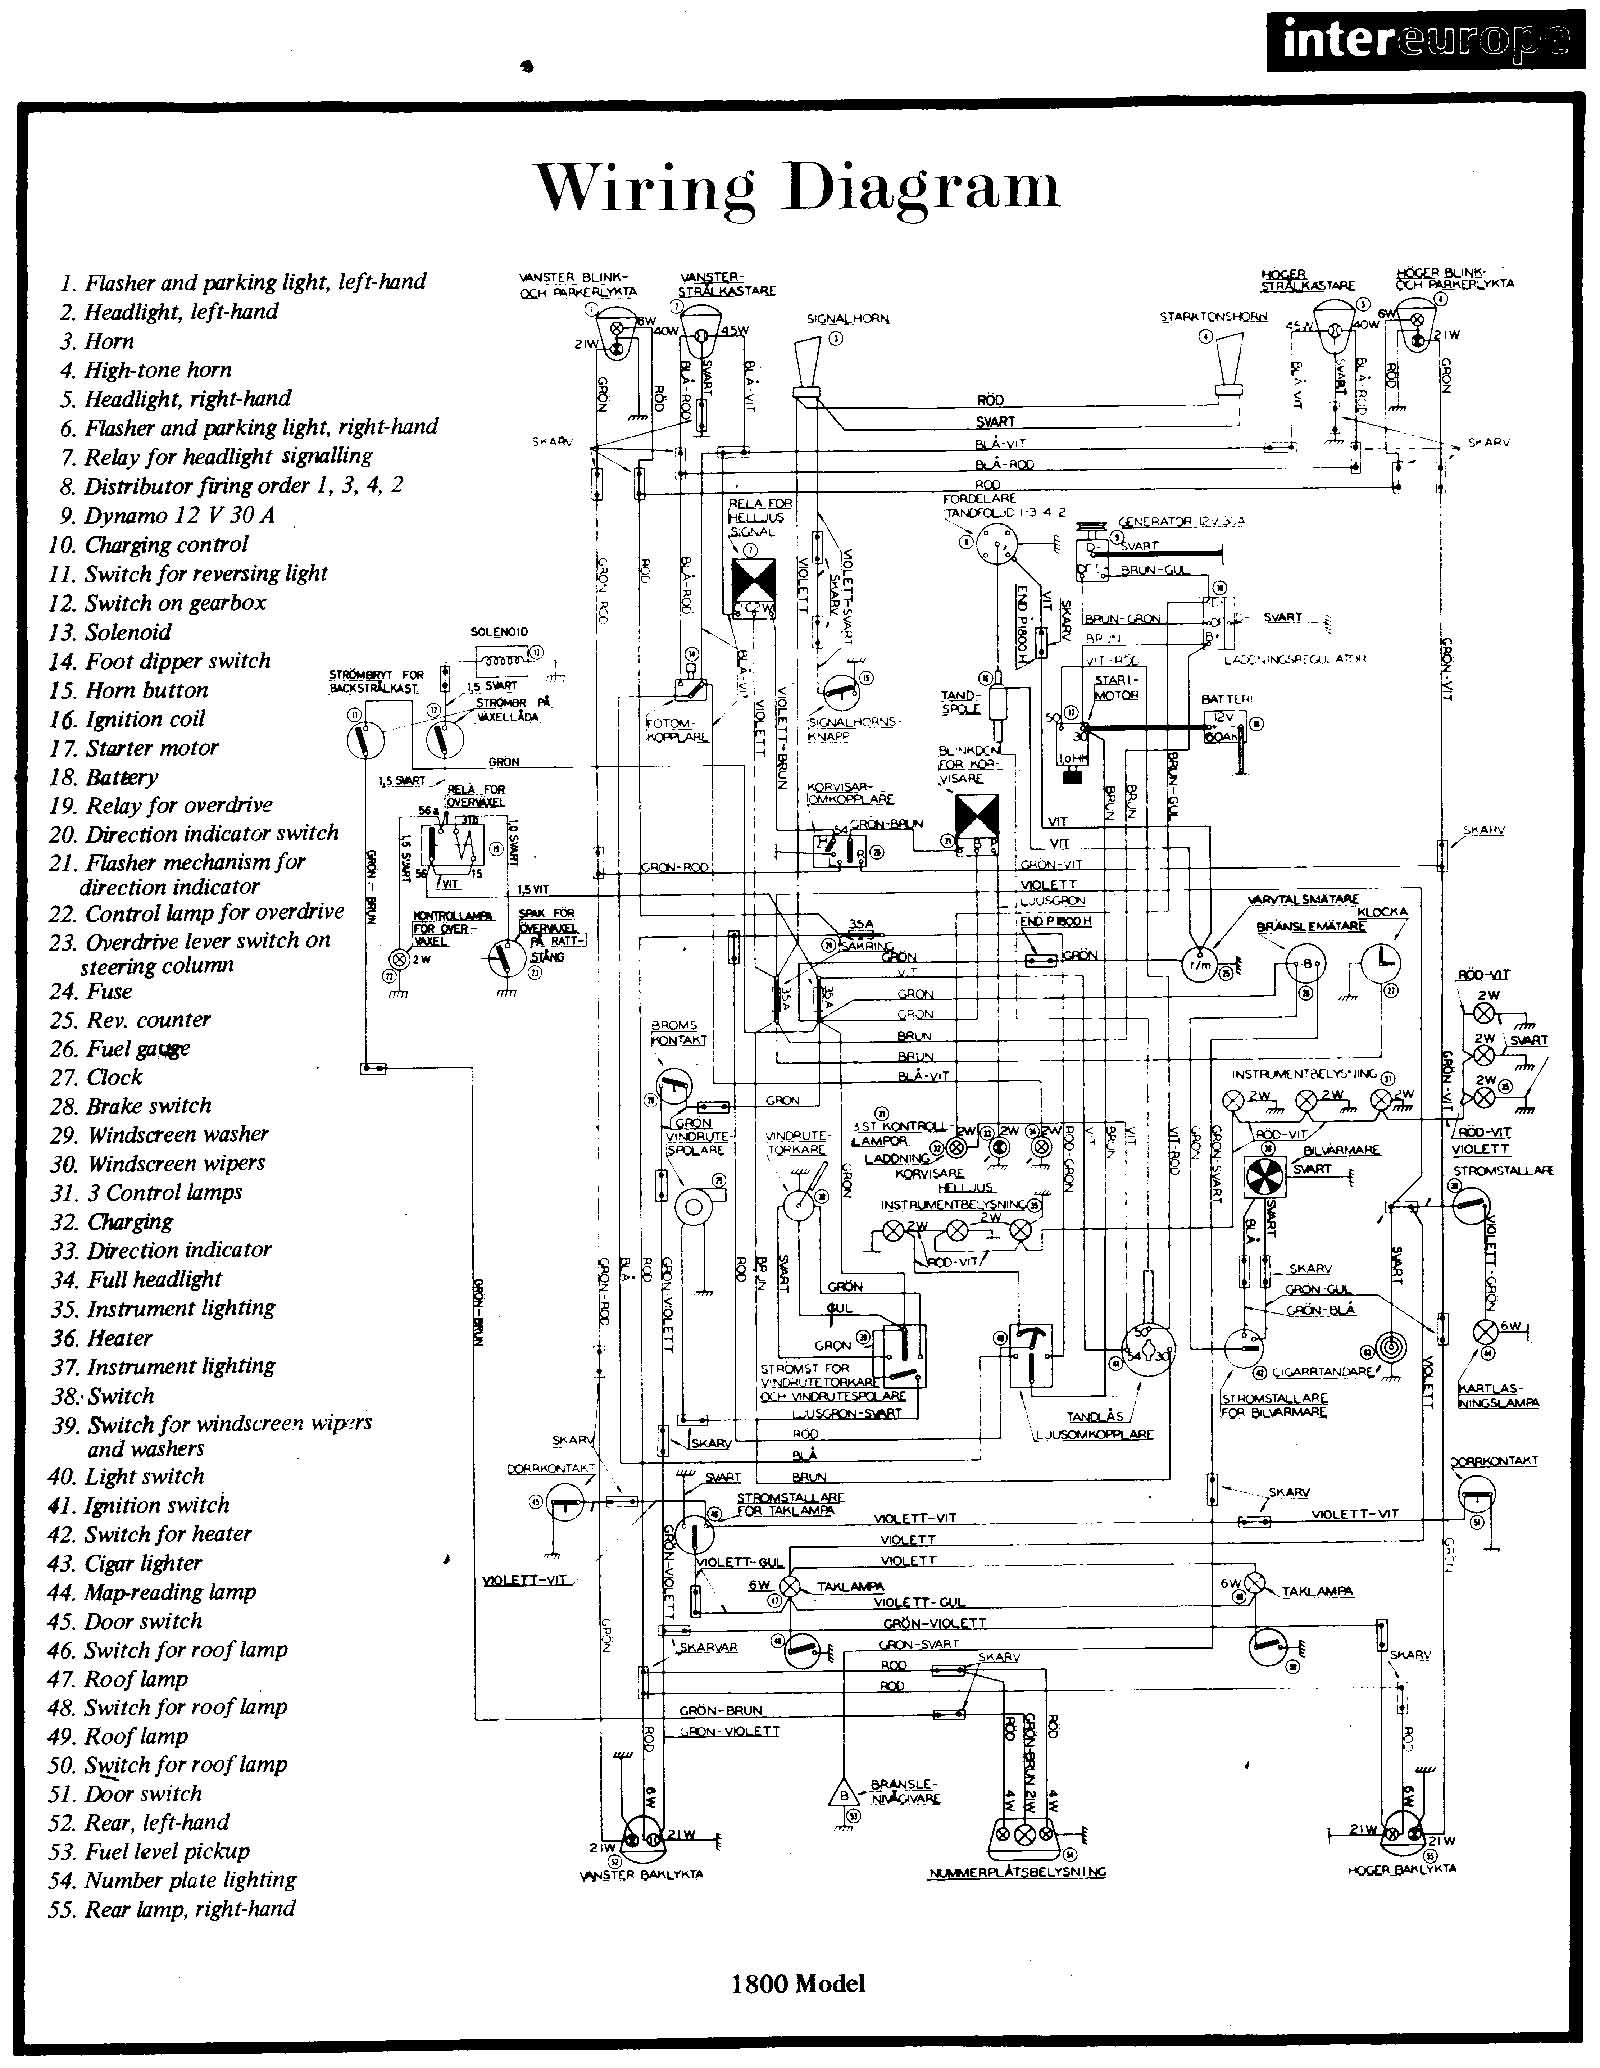 Isuzu Rodeo Engine Diagram Volvo Wiring Diagrams Wiring Diagram Of Isuzu Rodeo Engine Diagram